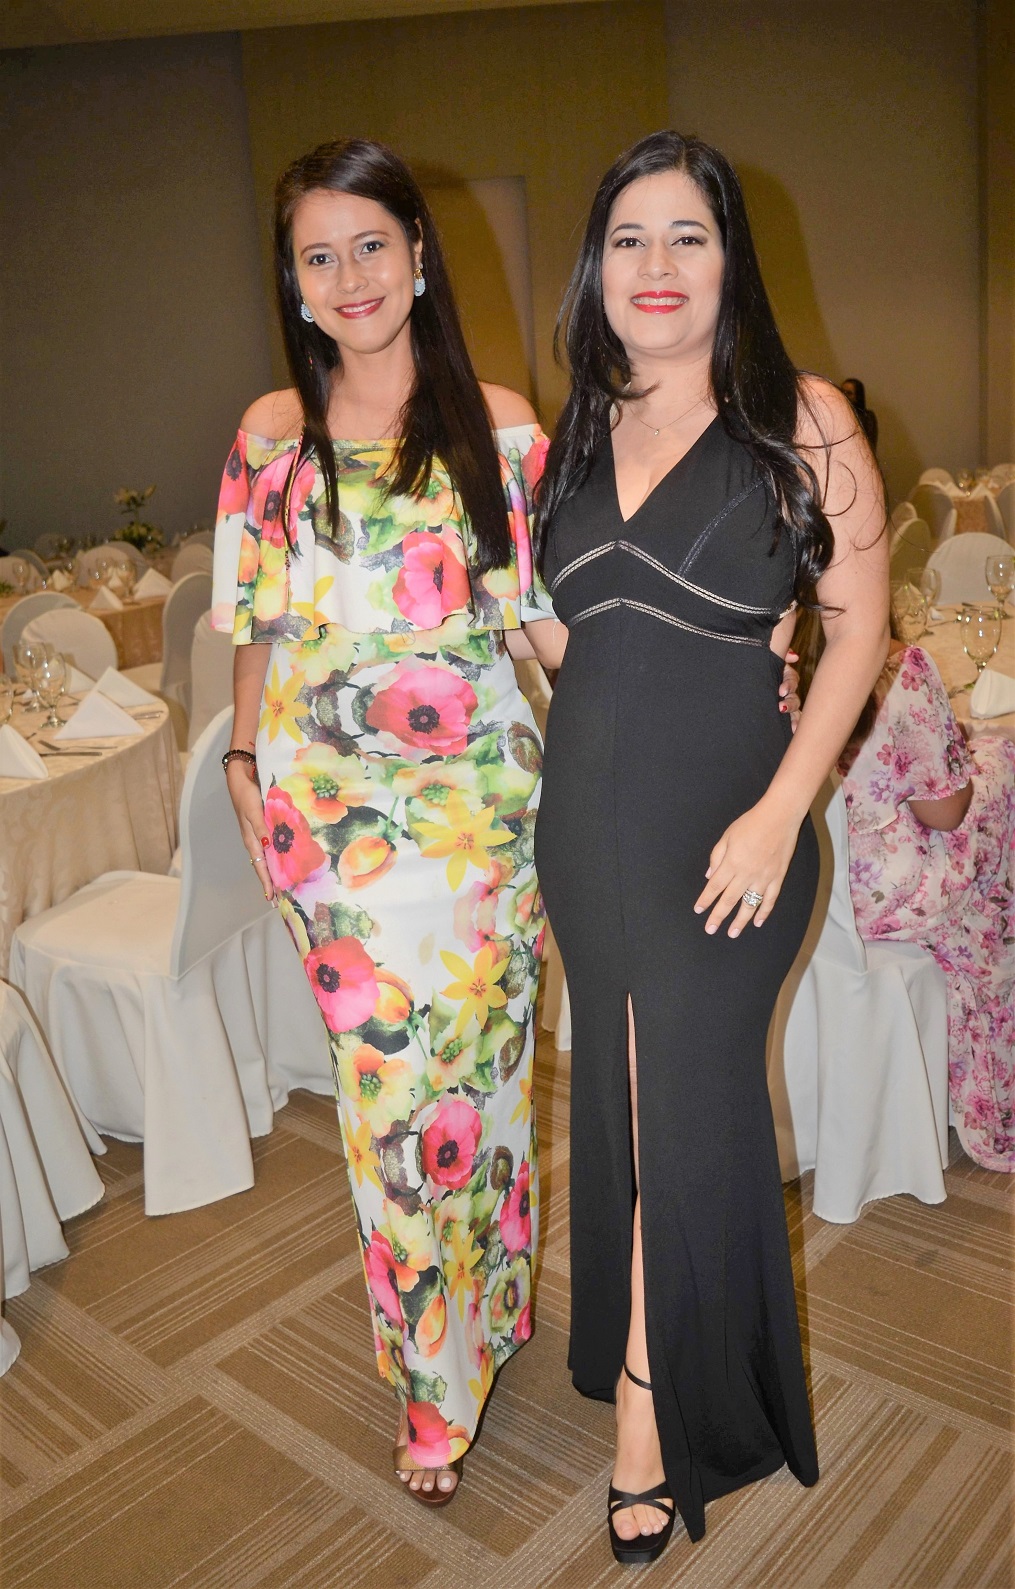 Galenos de San Pedro Sula celebran Día del Médico con cena de gala